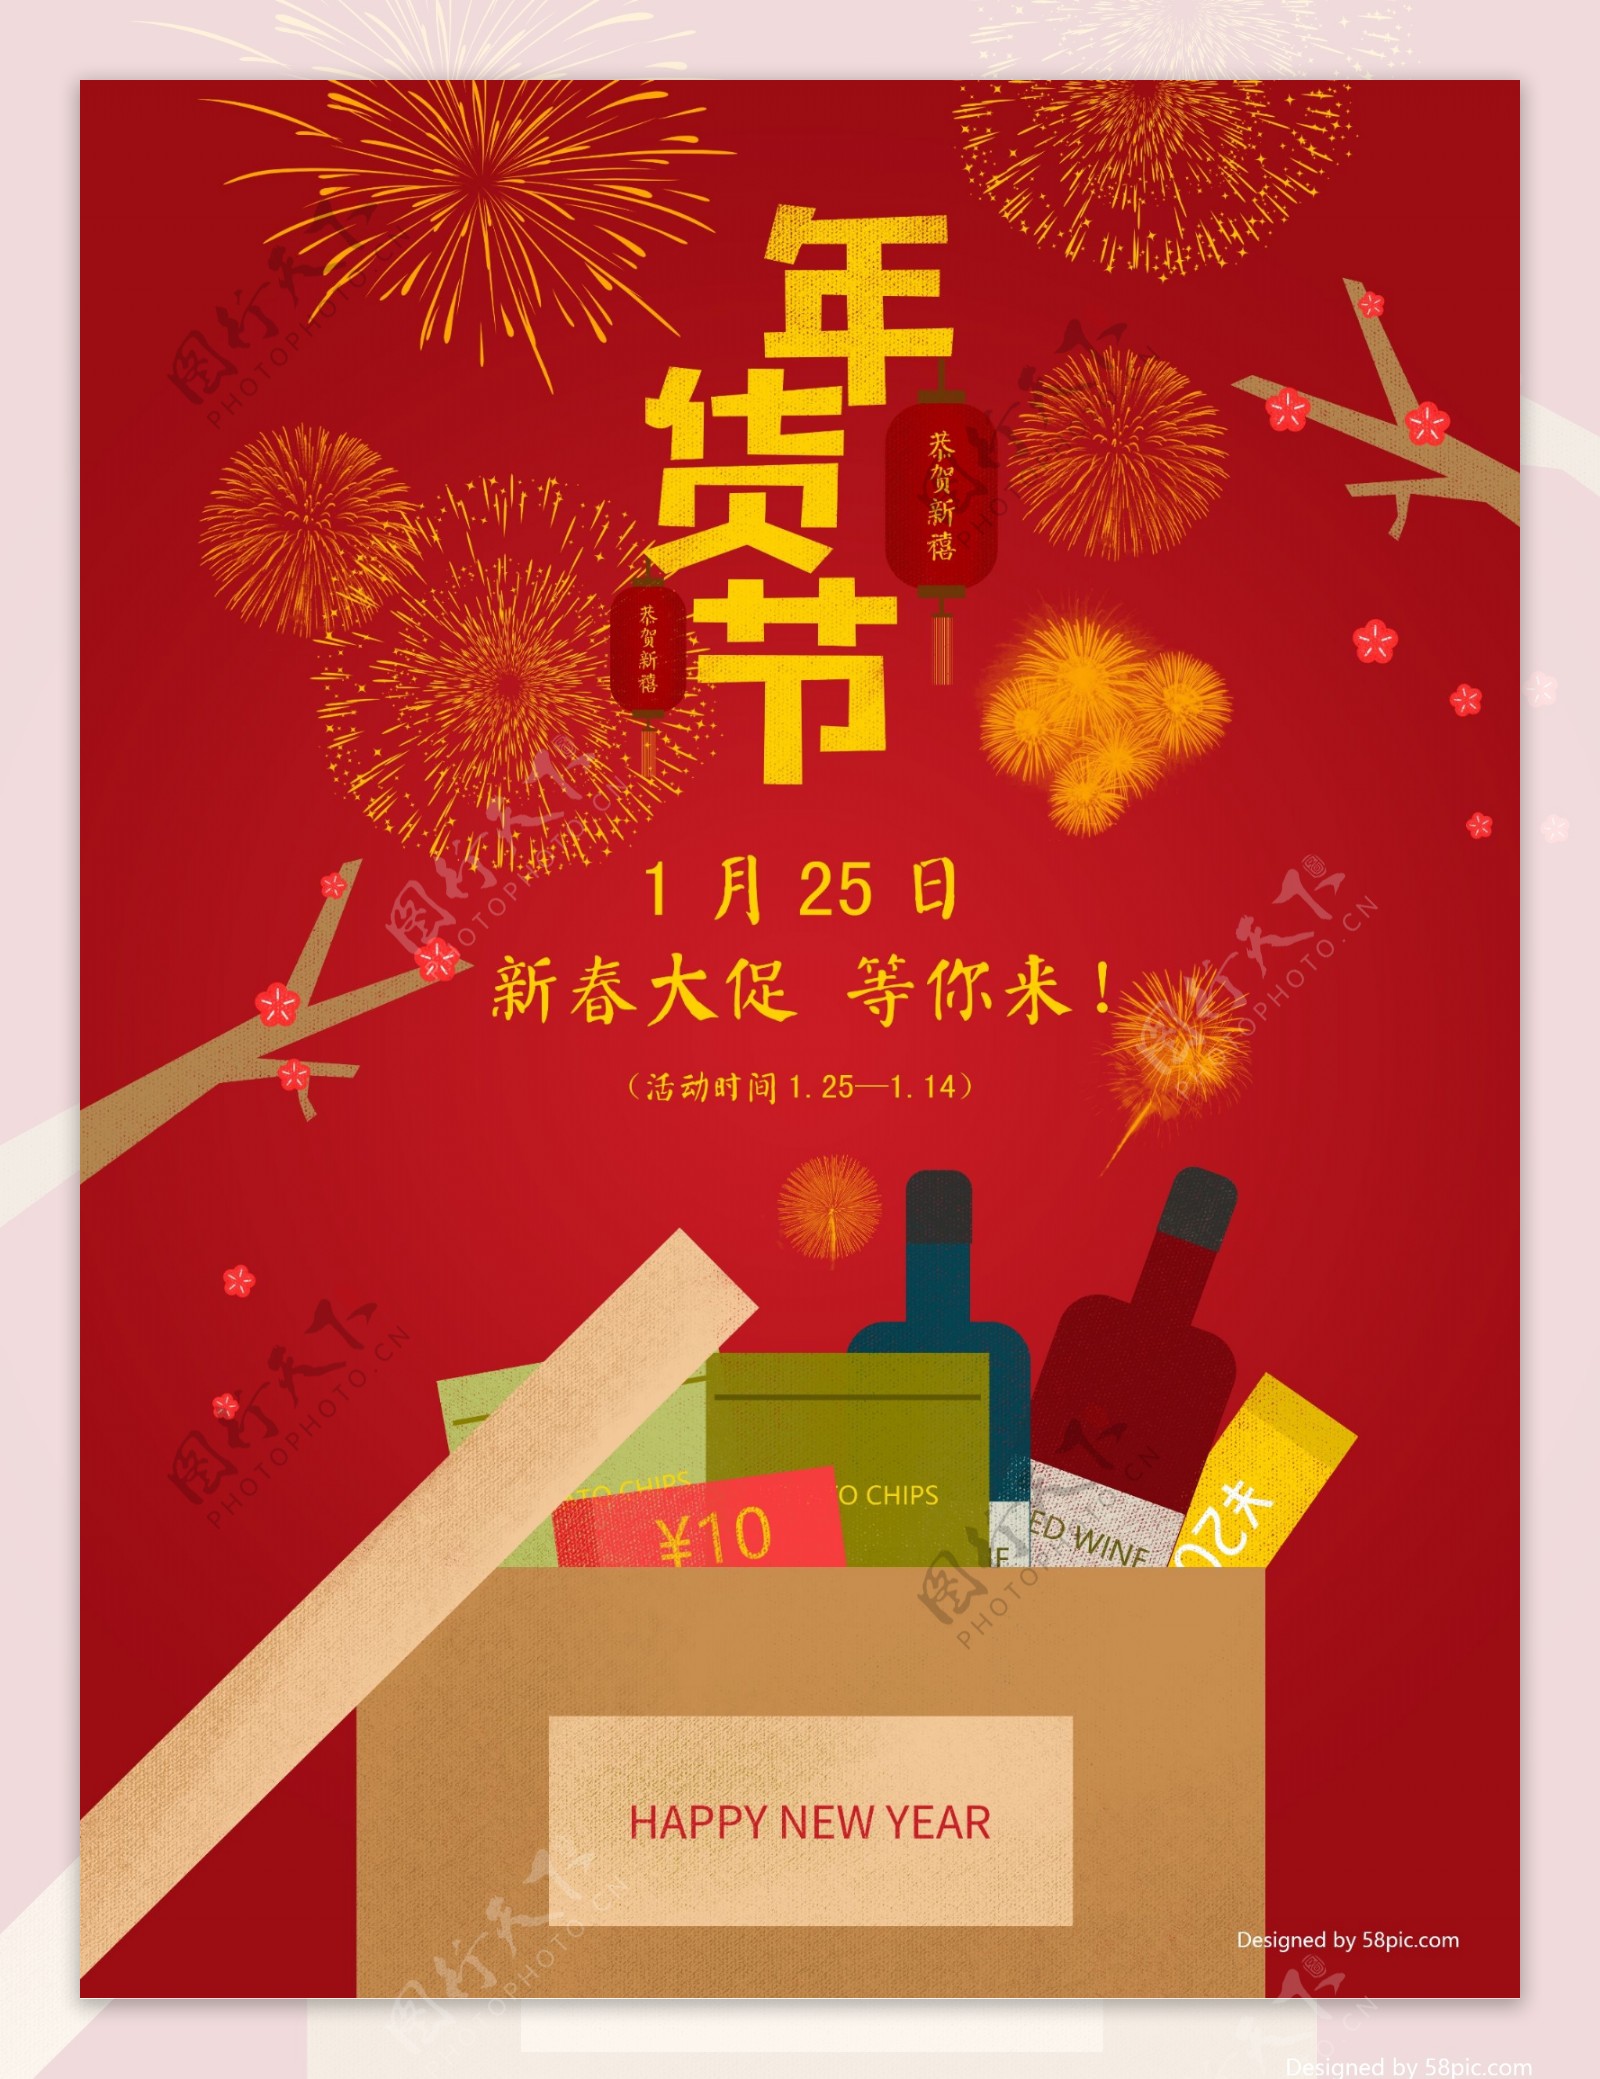 原创插画红色喜庆春节新春年货节海报展板